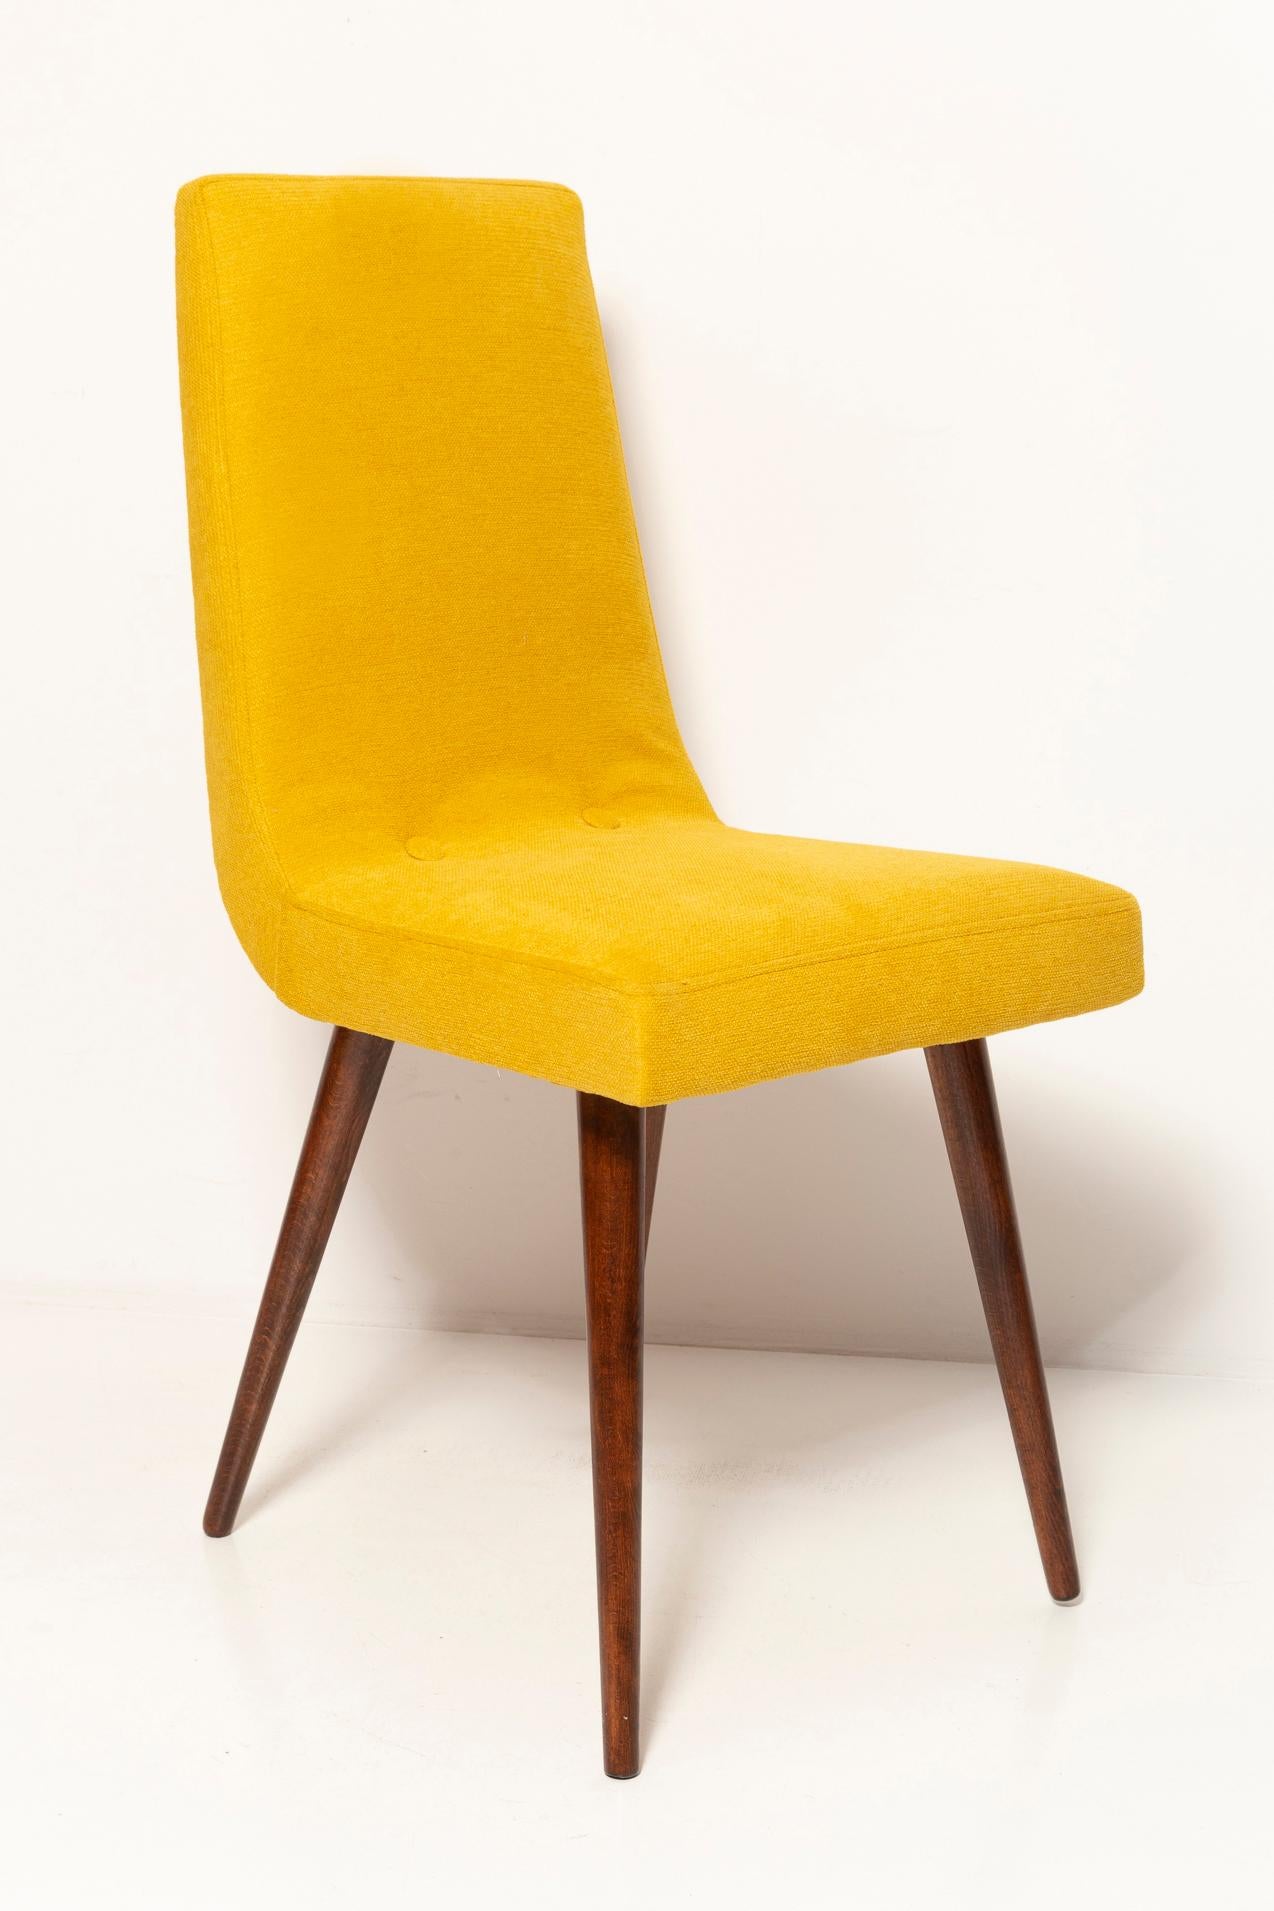 Set of Ten Midcentury Mustard Yellow Wool Chairs, Rajmund Halas Europe, 1960s For Sale 5